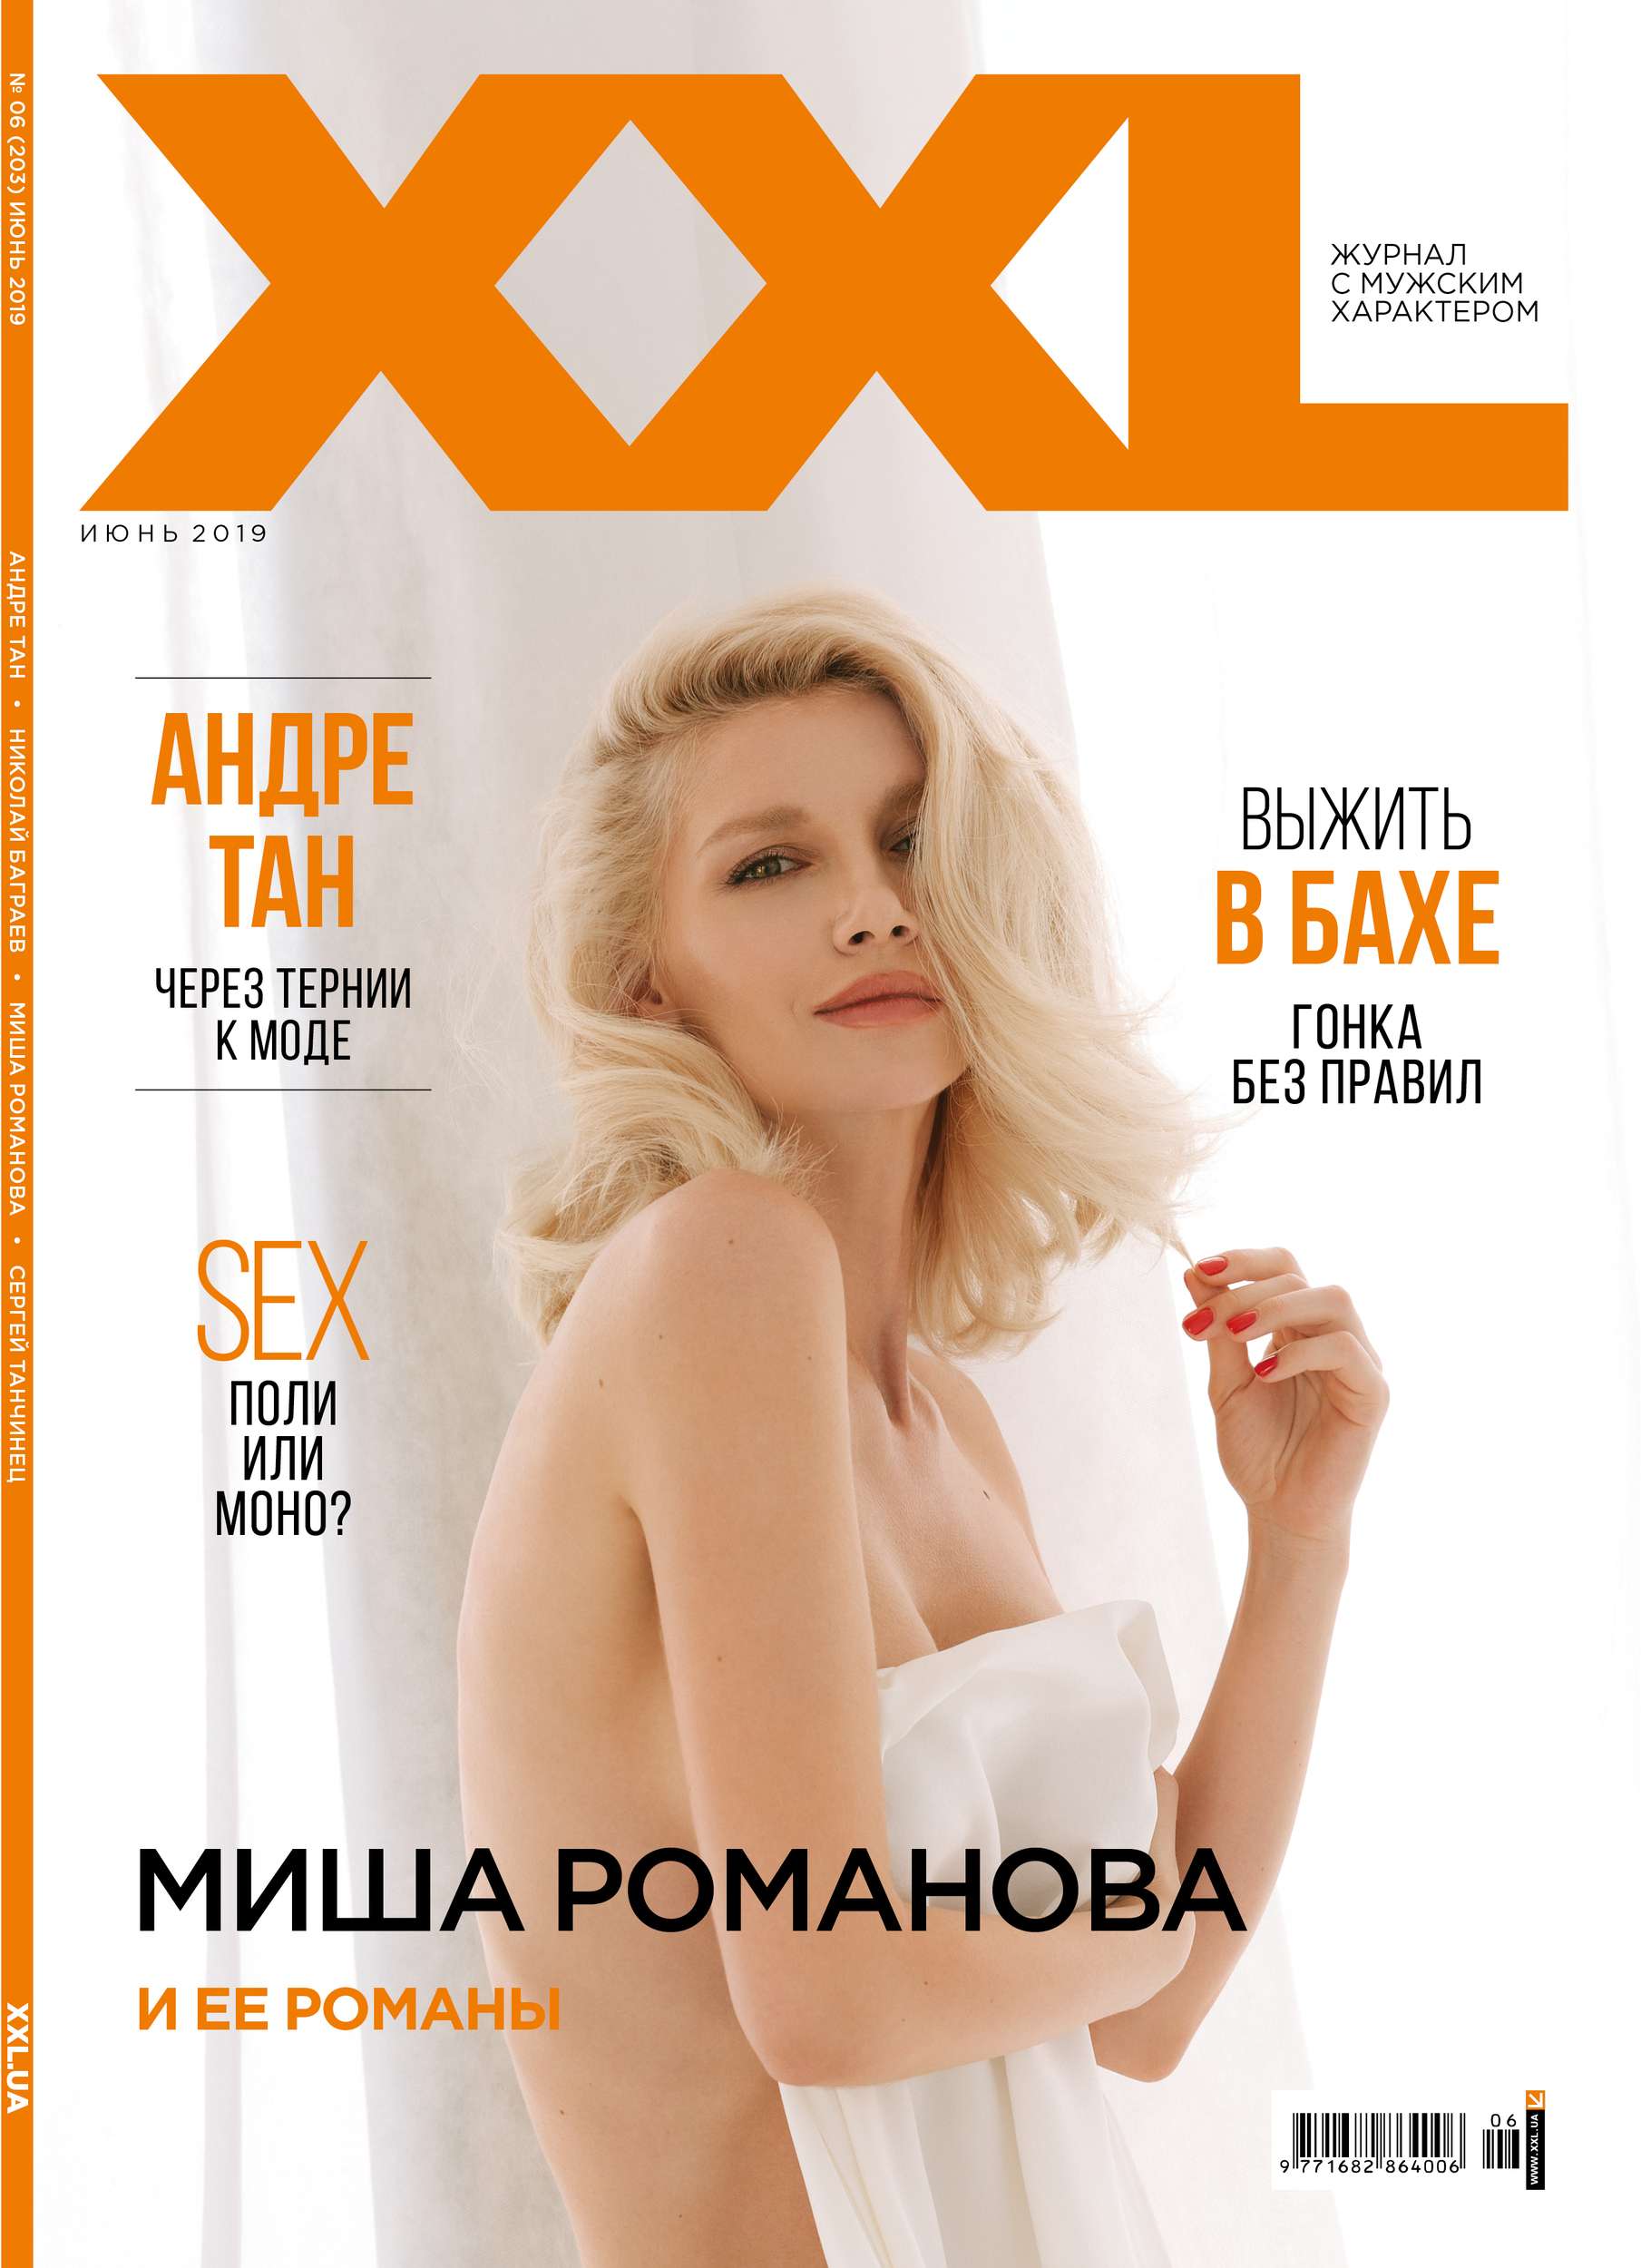 Экс-участница 'ВИА Гры' Миша Романова полностью разделась для обложки XXL - фото 436329